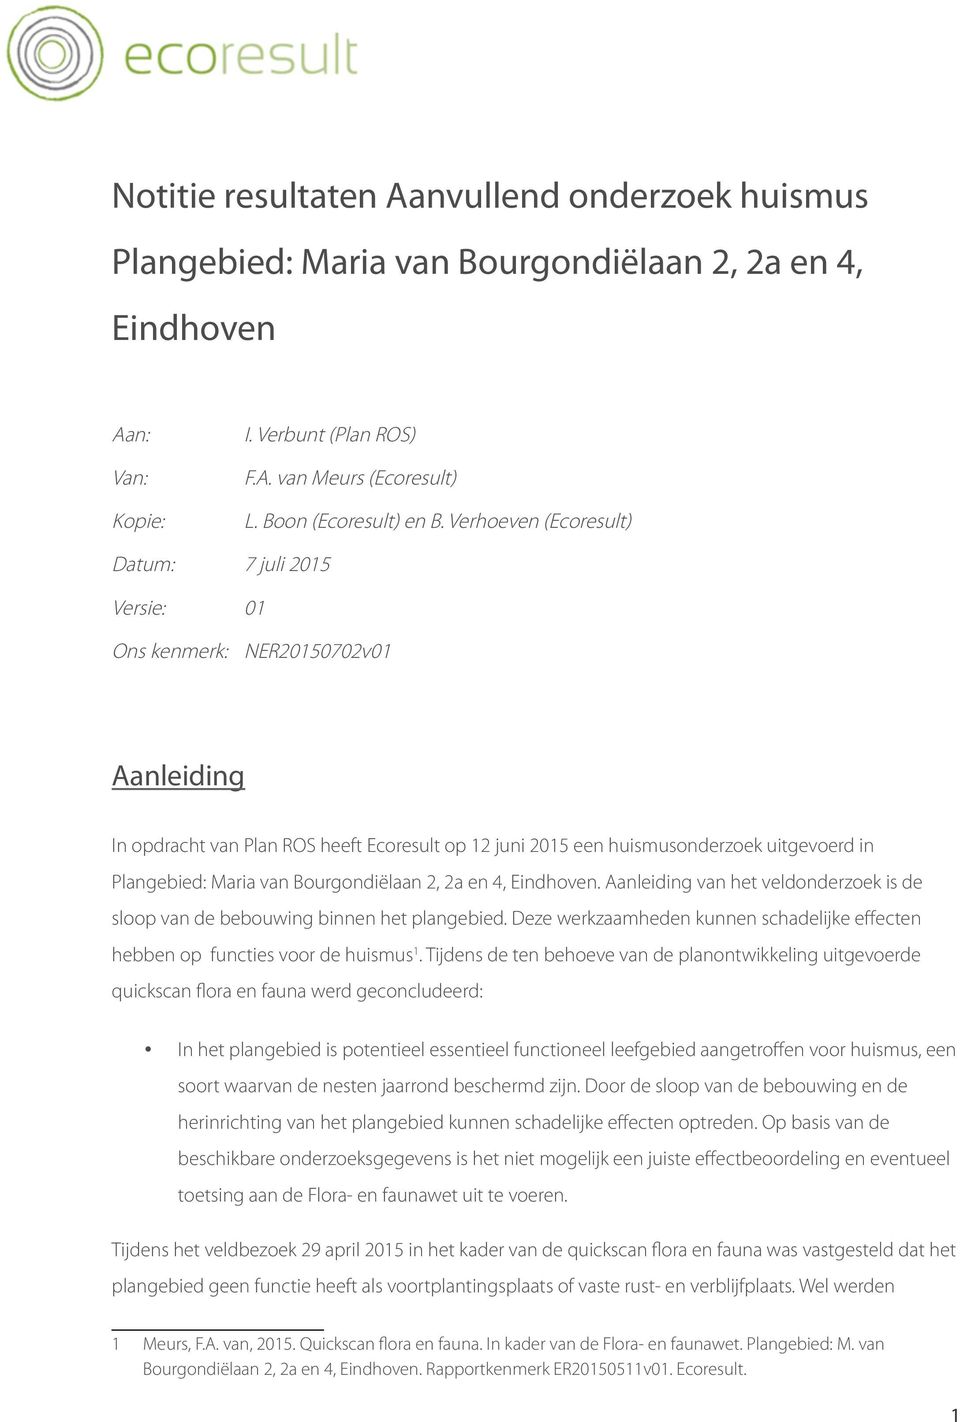 Maria van Bourgondiëlaan 2, 2a en 4, Eindhoven. Aanleiding van het veldonderzoek is de sloop van de bebouwing binnen het plangebied.